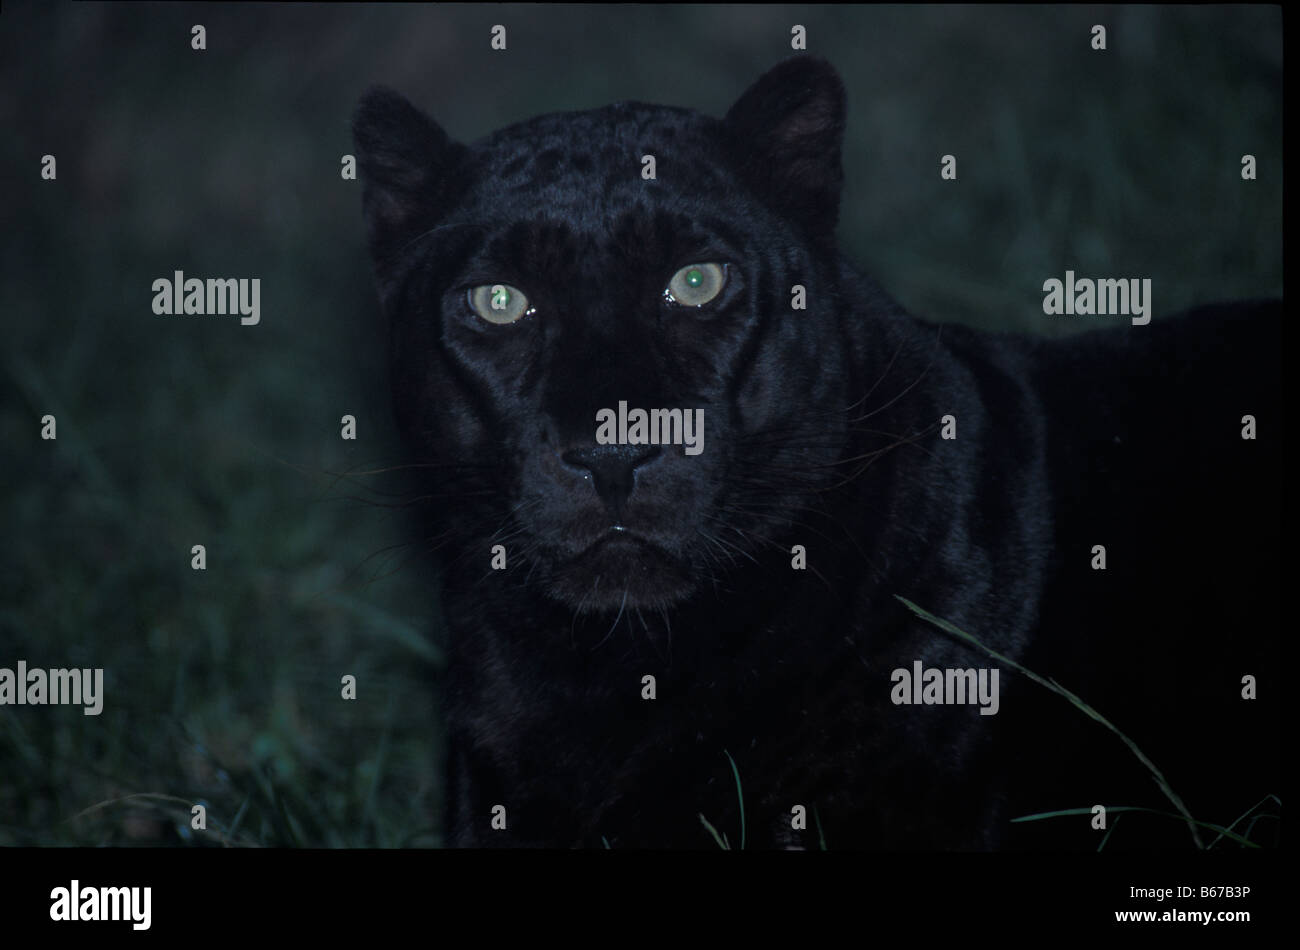 Panthere noire Panthère Schwarzer Black Panther Panthera pardus léopard de phase de couleur noire Afrique Afrika attendus par des animaux rugissants. Banque D'Images